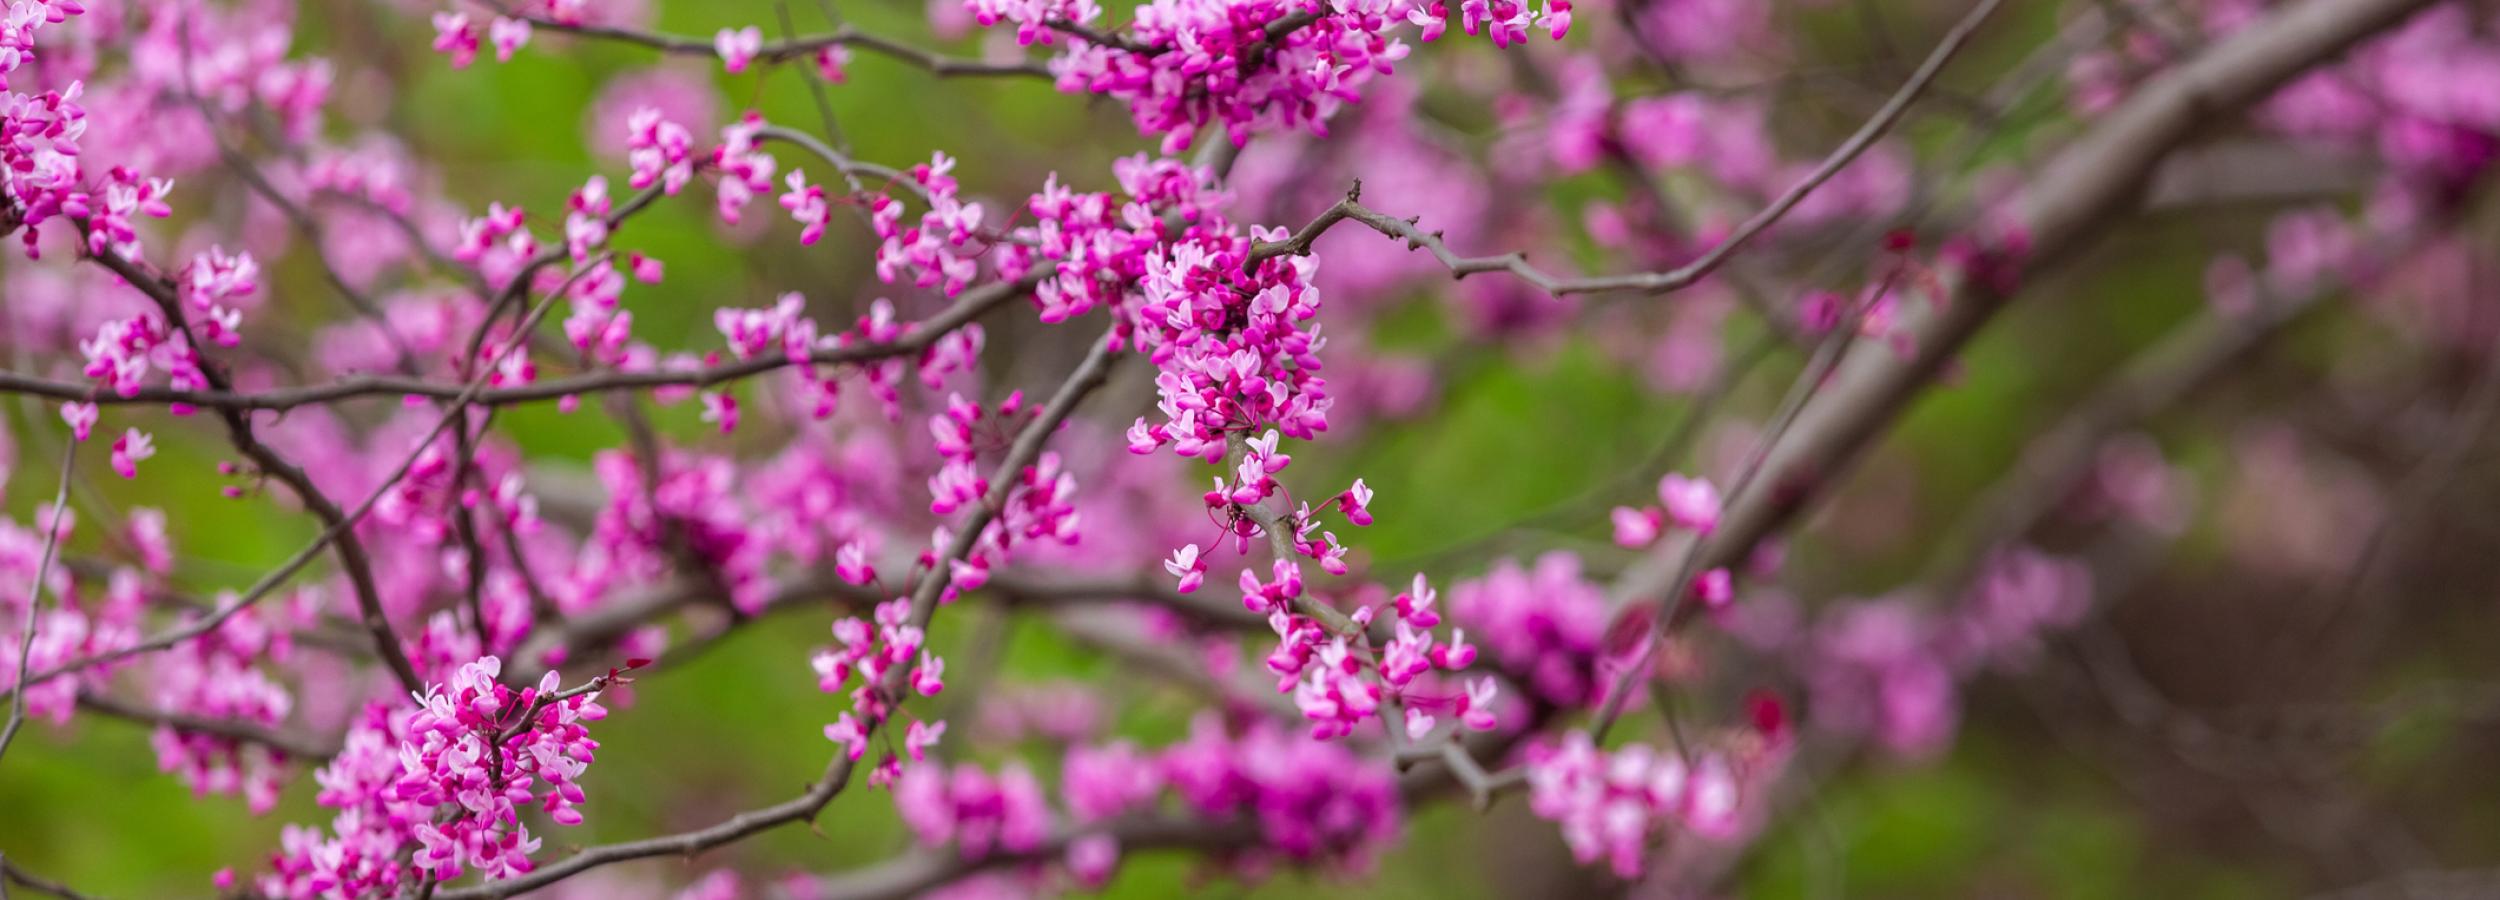 eastern redbud tree in bloom